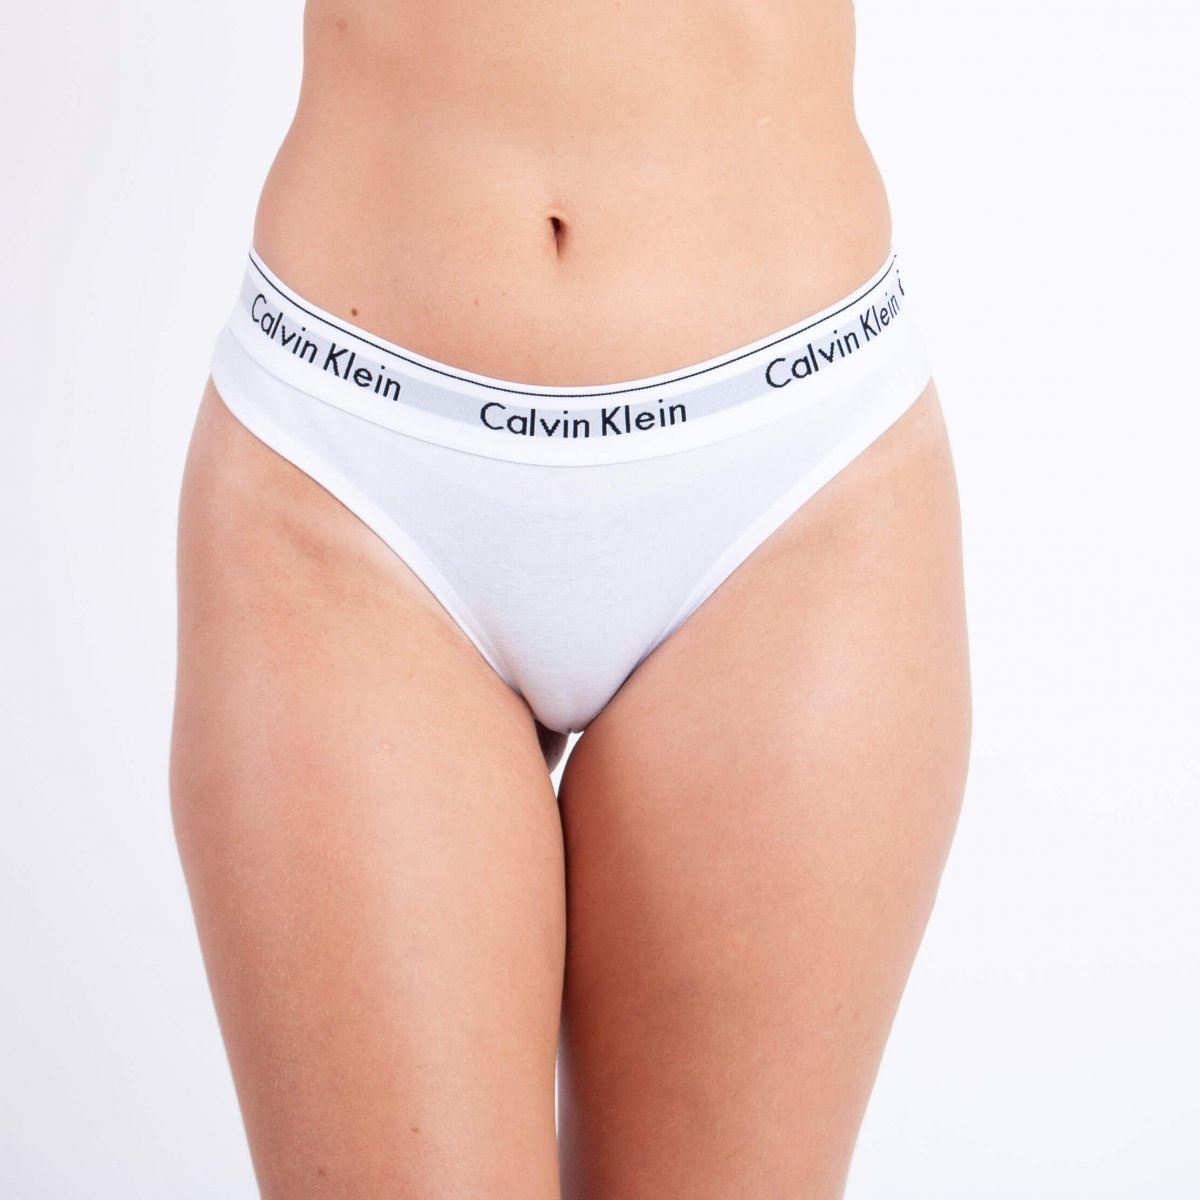 Calcinha Calvin Klein Tanga Modern Cotton Branco